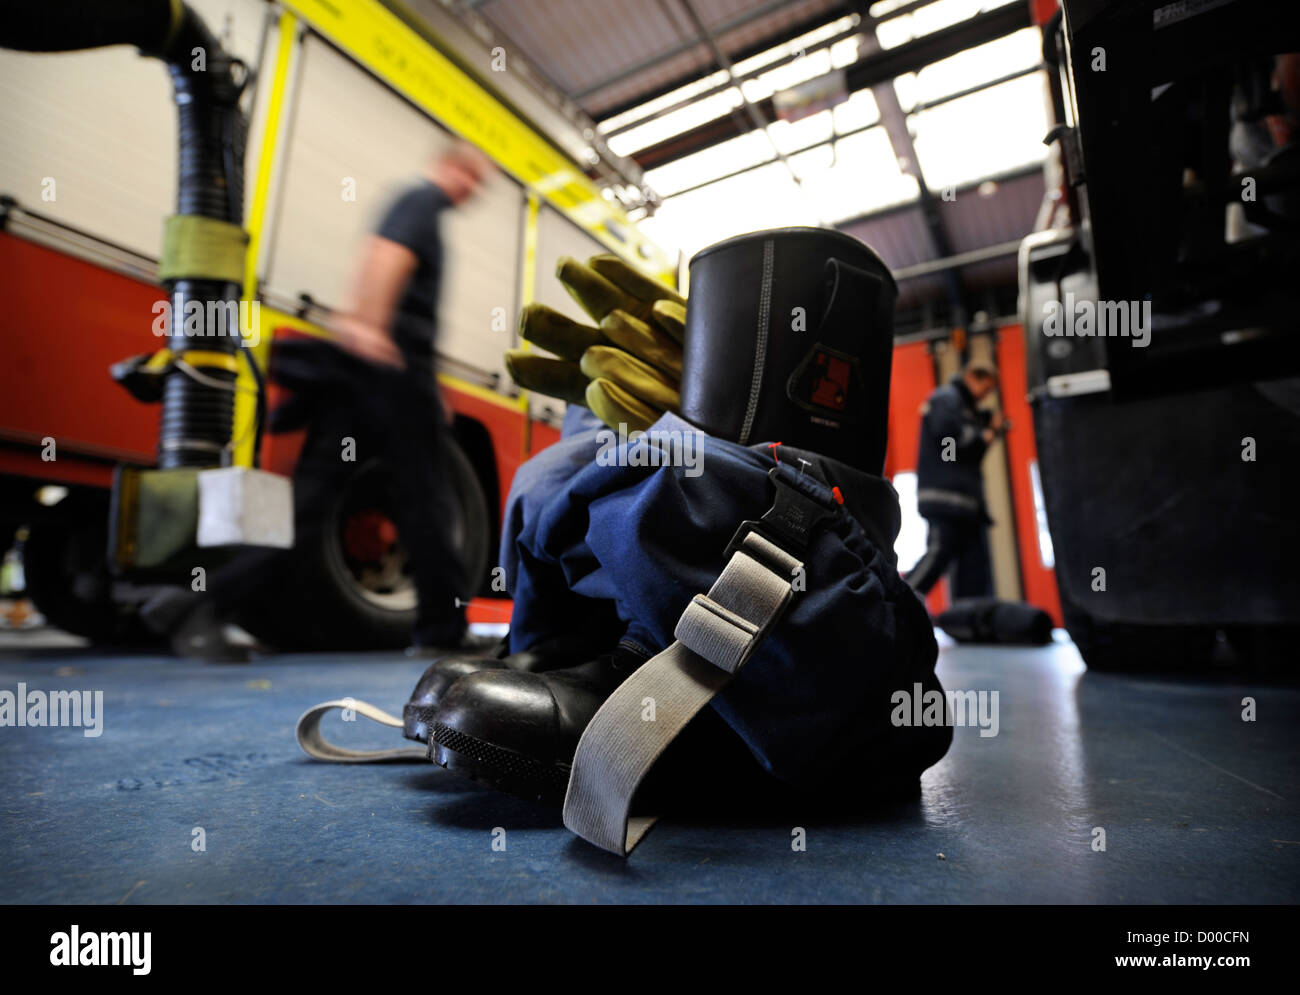 Re Feuerwehrmann weiße Uhr in Pontypridd Feuerwache in S Wales - Feuerwehr Schutzhandschuhe Stiefel und Hose angelegt Stockfoto